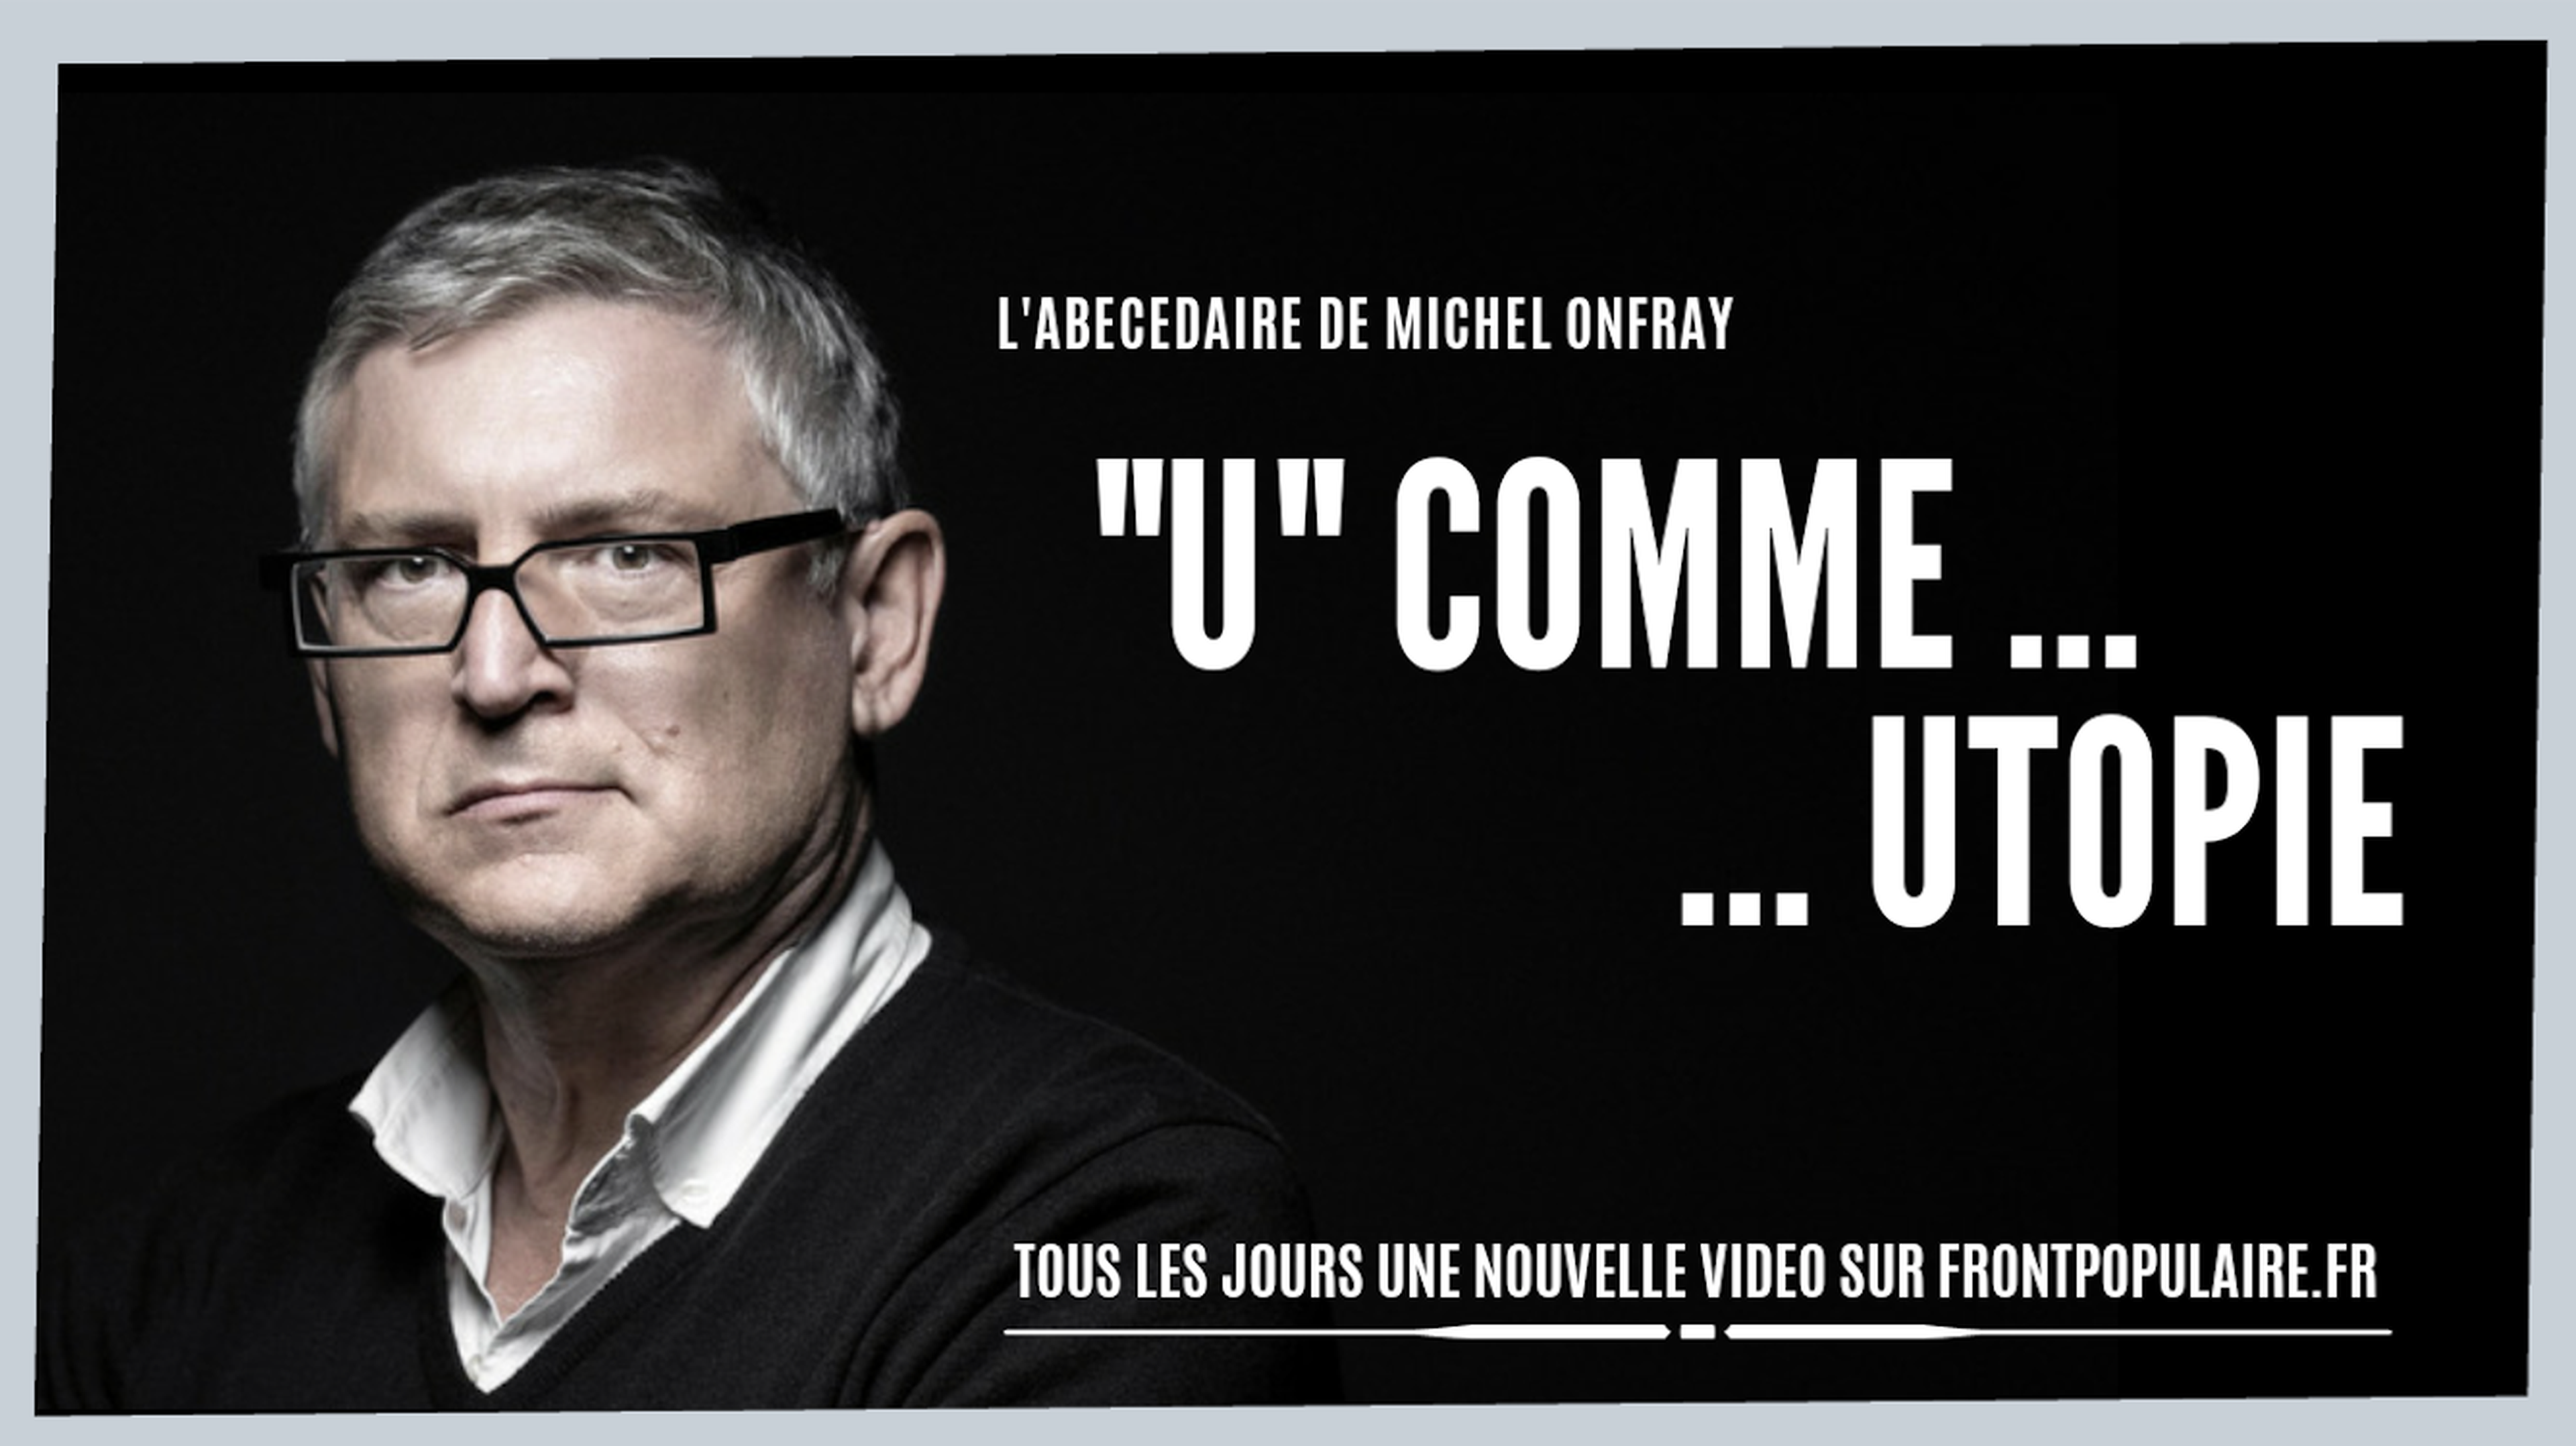 L’abécédaire de Michel Onfray: U comme Utopie